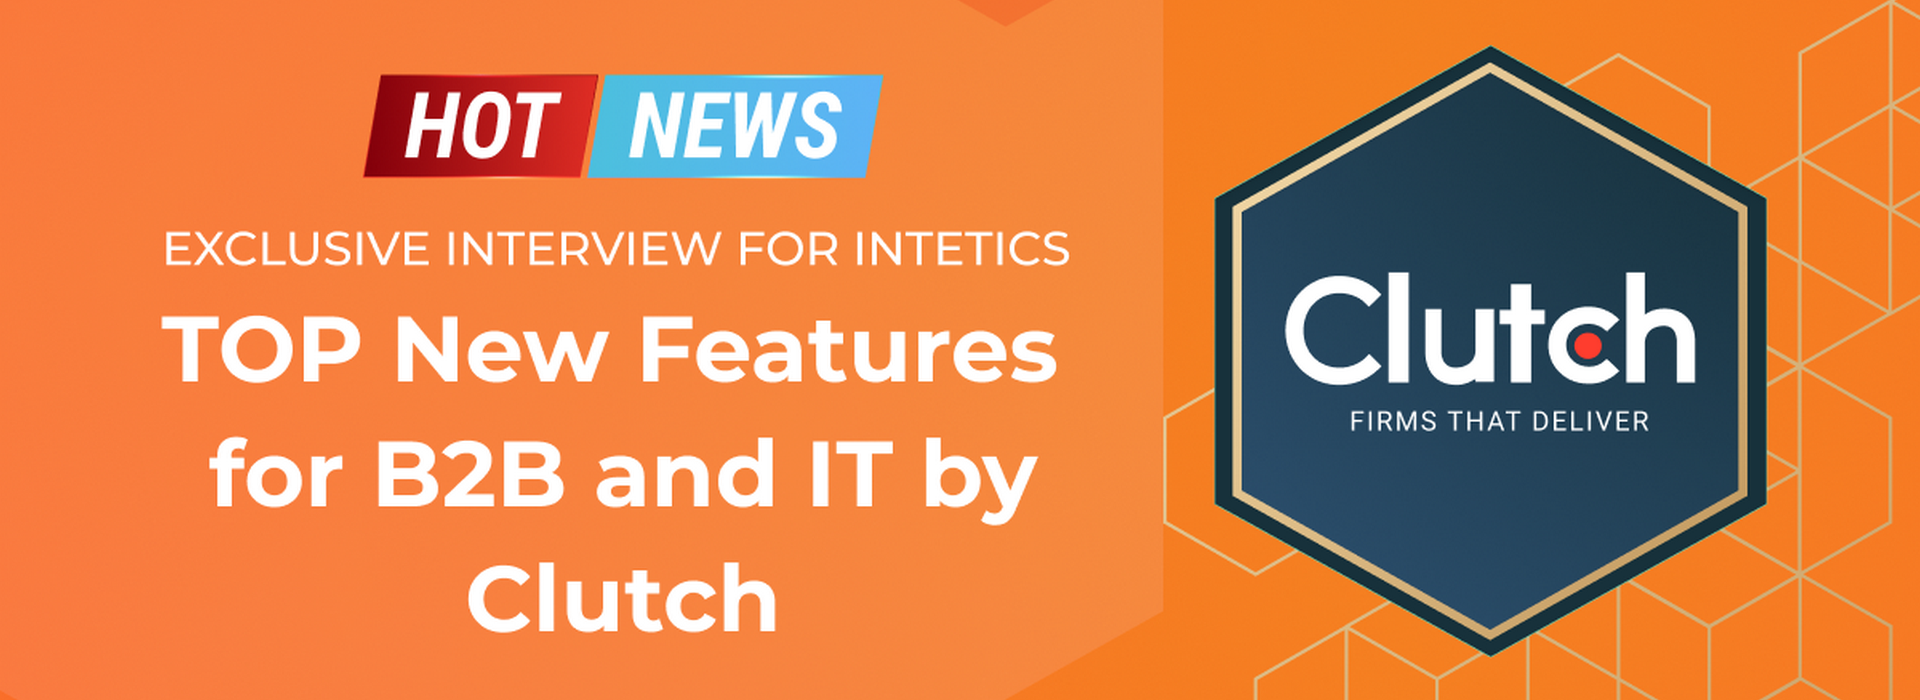 Гарячі новини! Головні проривні оновлення для ІТ-індустрії від Clutch: ексклюзивне інтерв’ю для Intetics